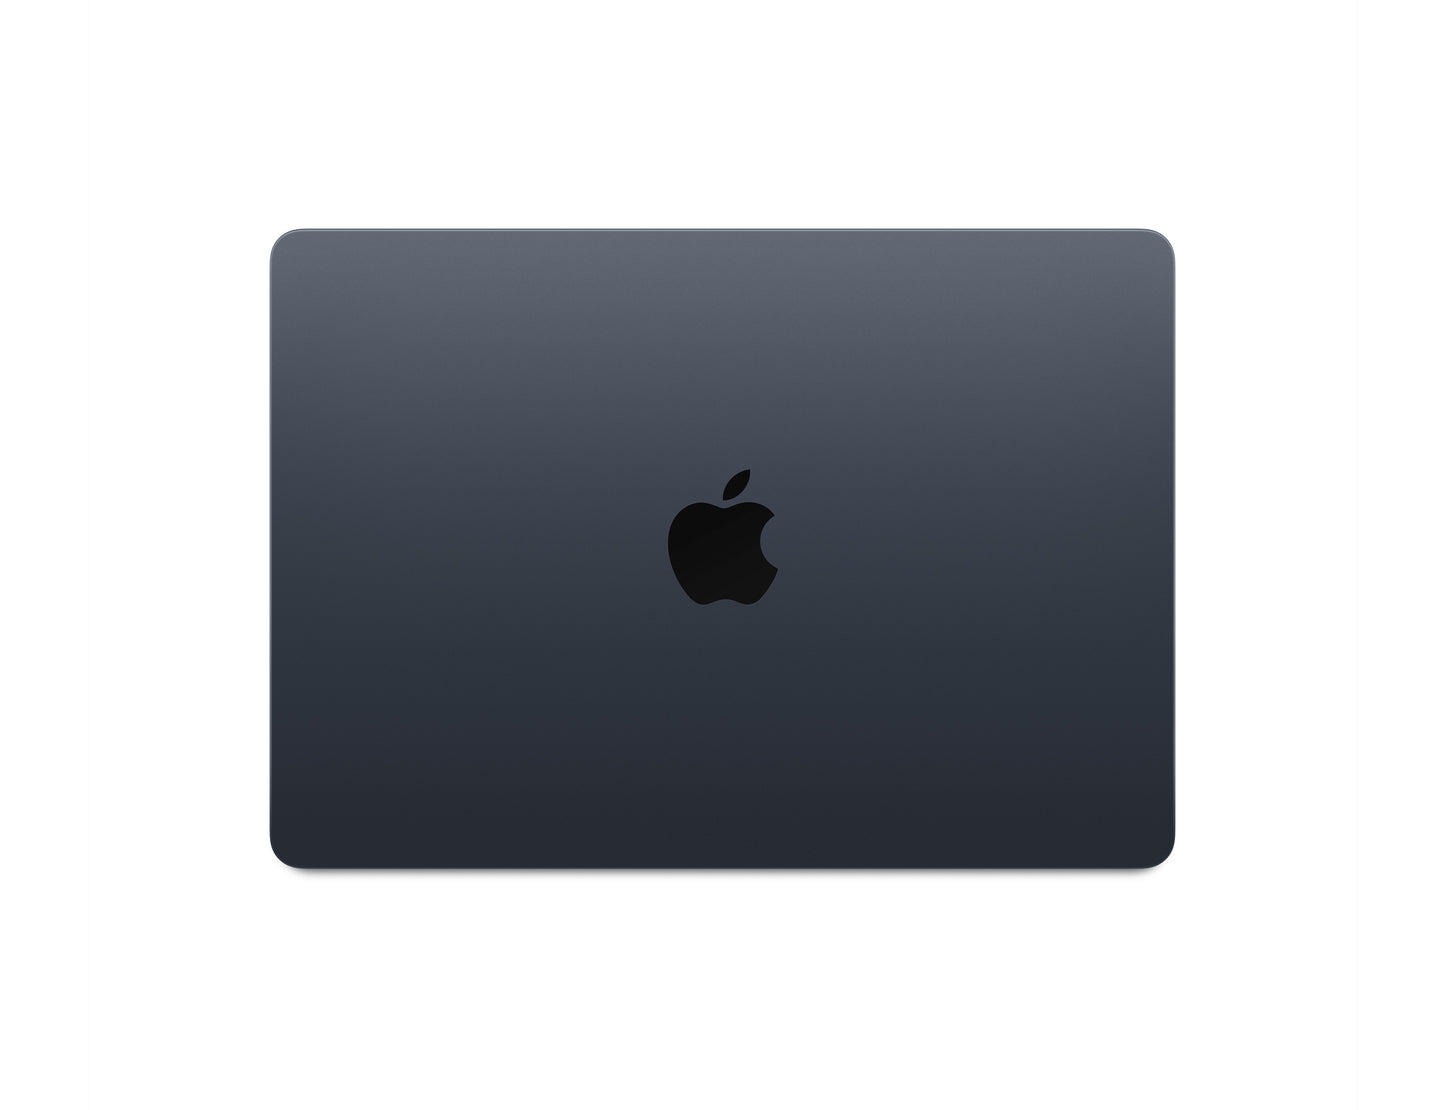 Apple MacBook Air M2 2022, 512 GB SSD, 8GB RAM, M2 Processors,